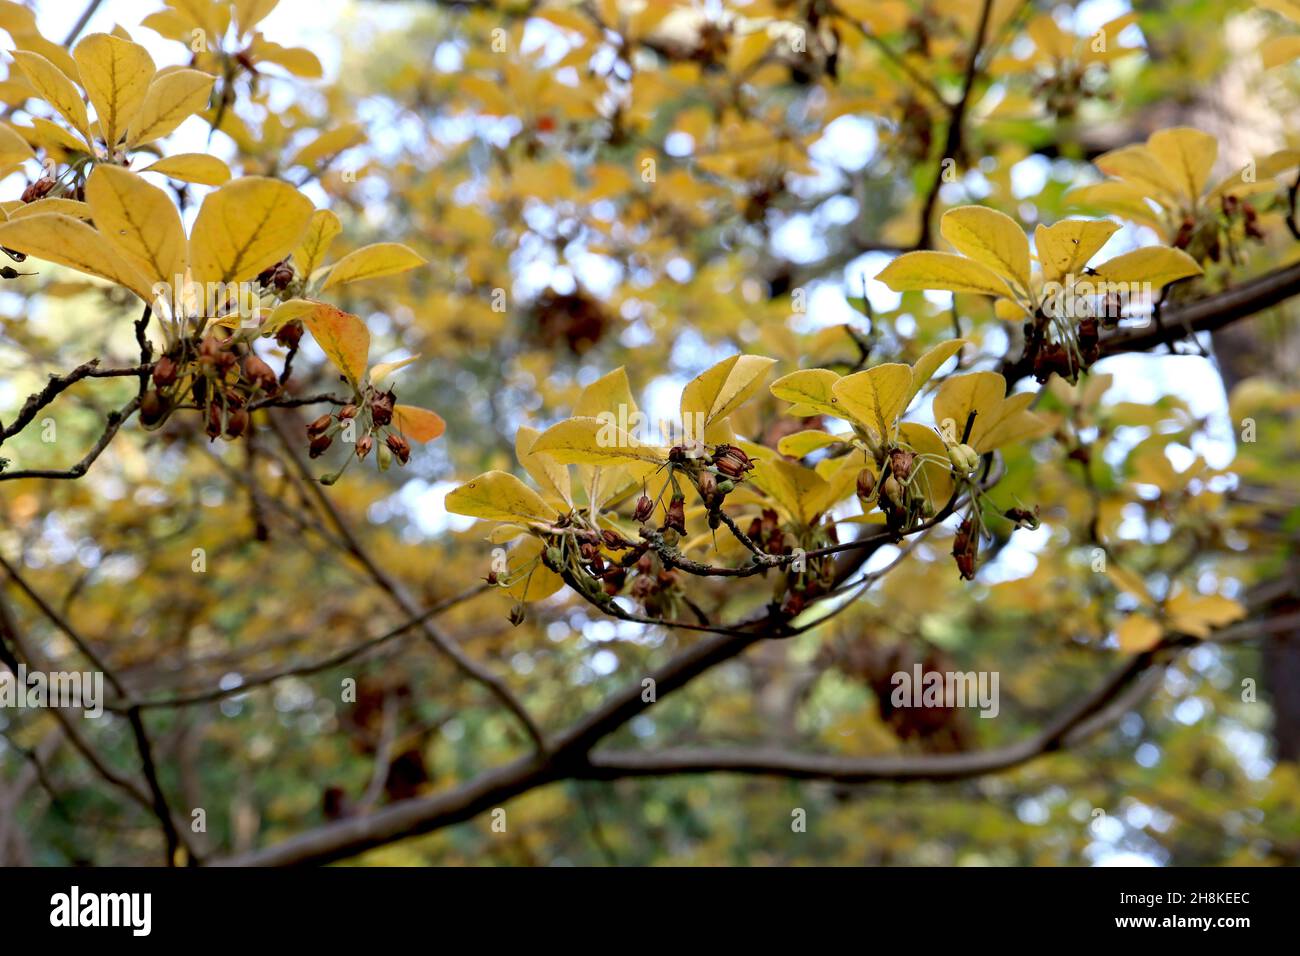 Ekianthus cernuus rubens, herabhängender roter Enkianthus – hängende, gestielte Cluster, braune Samenköpfe und gelbe obovate Blätter, November, England, Großbritannien Stockfoto